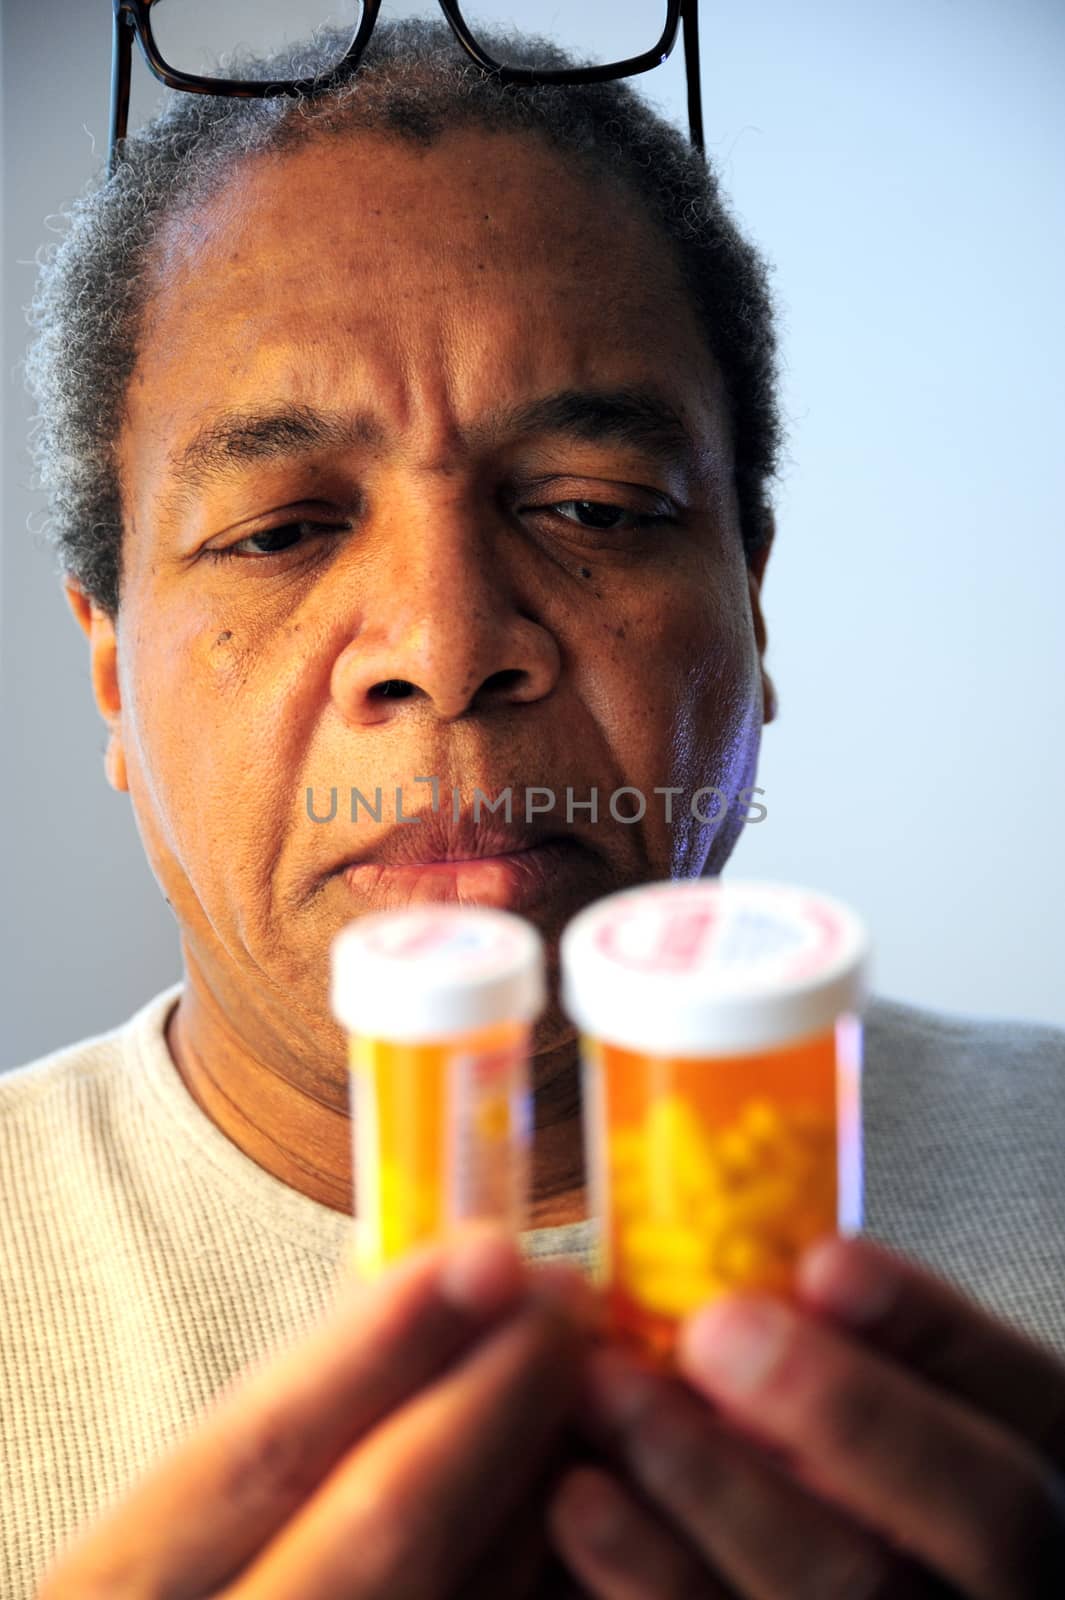 Black man taking medicine for high blood pressure.